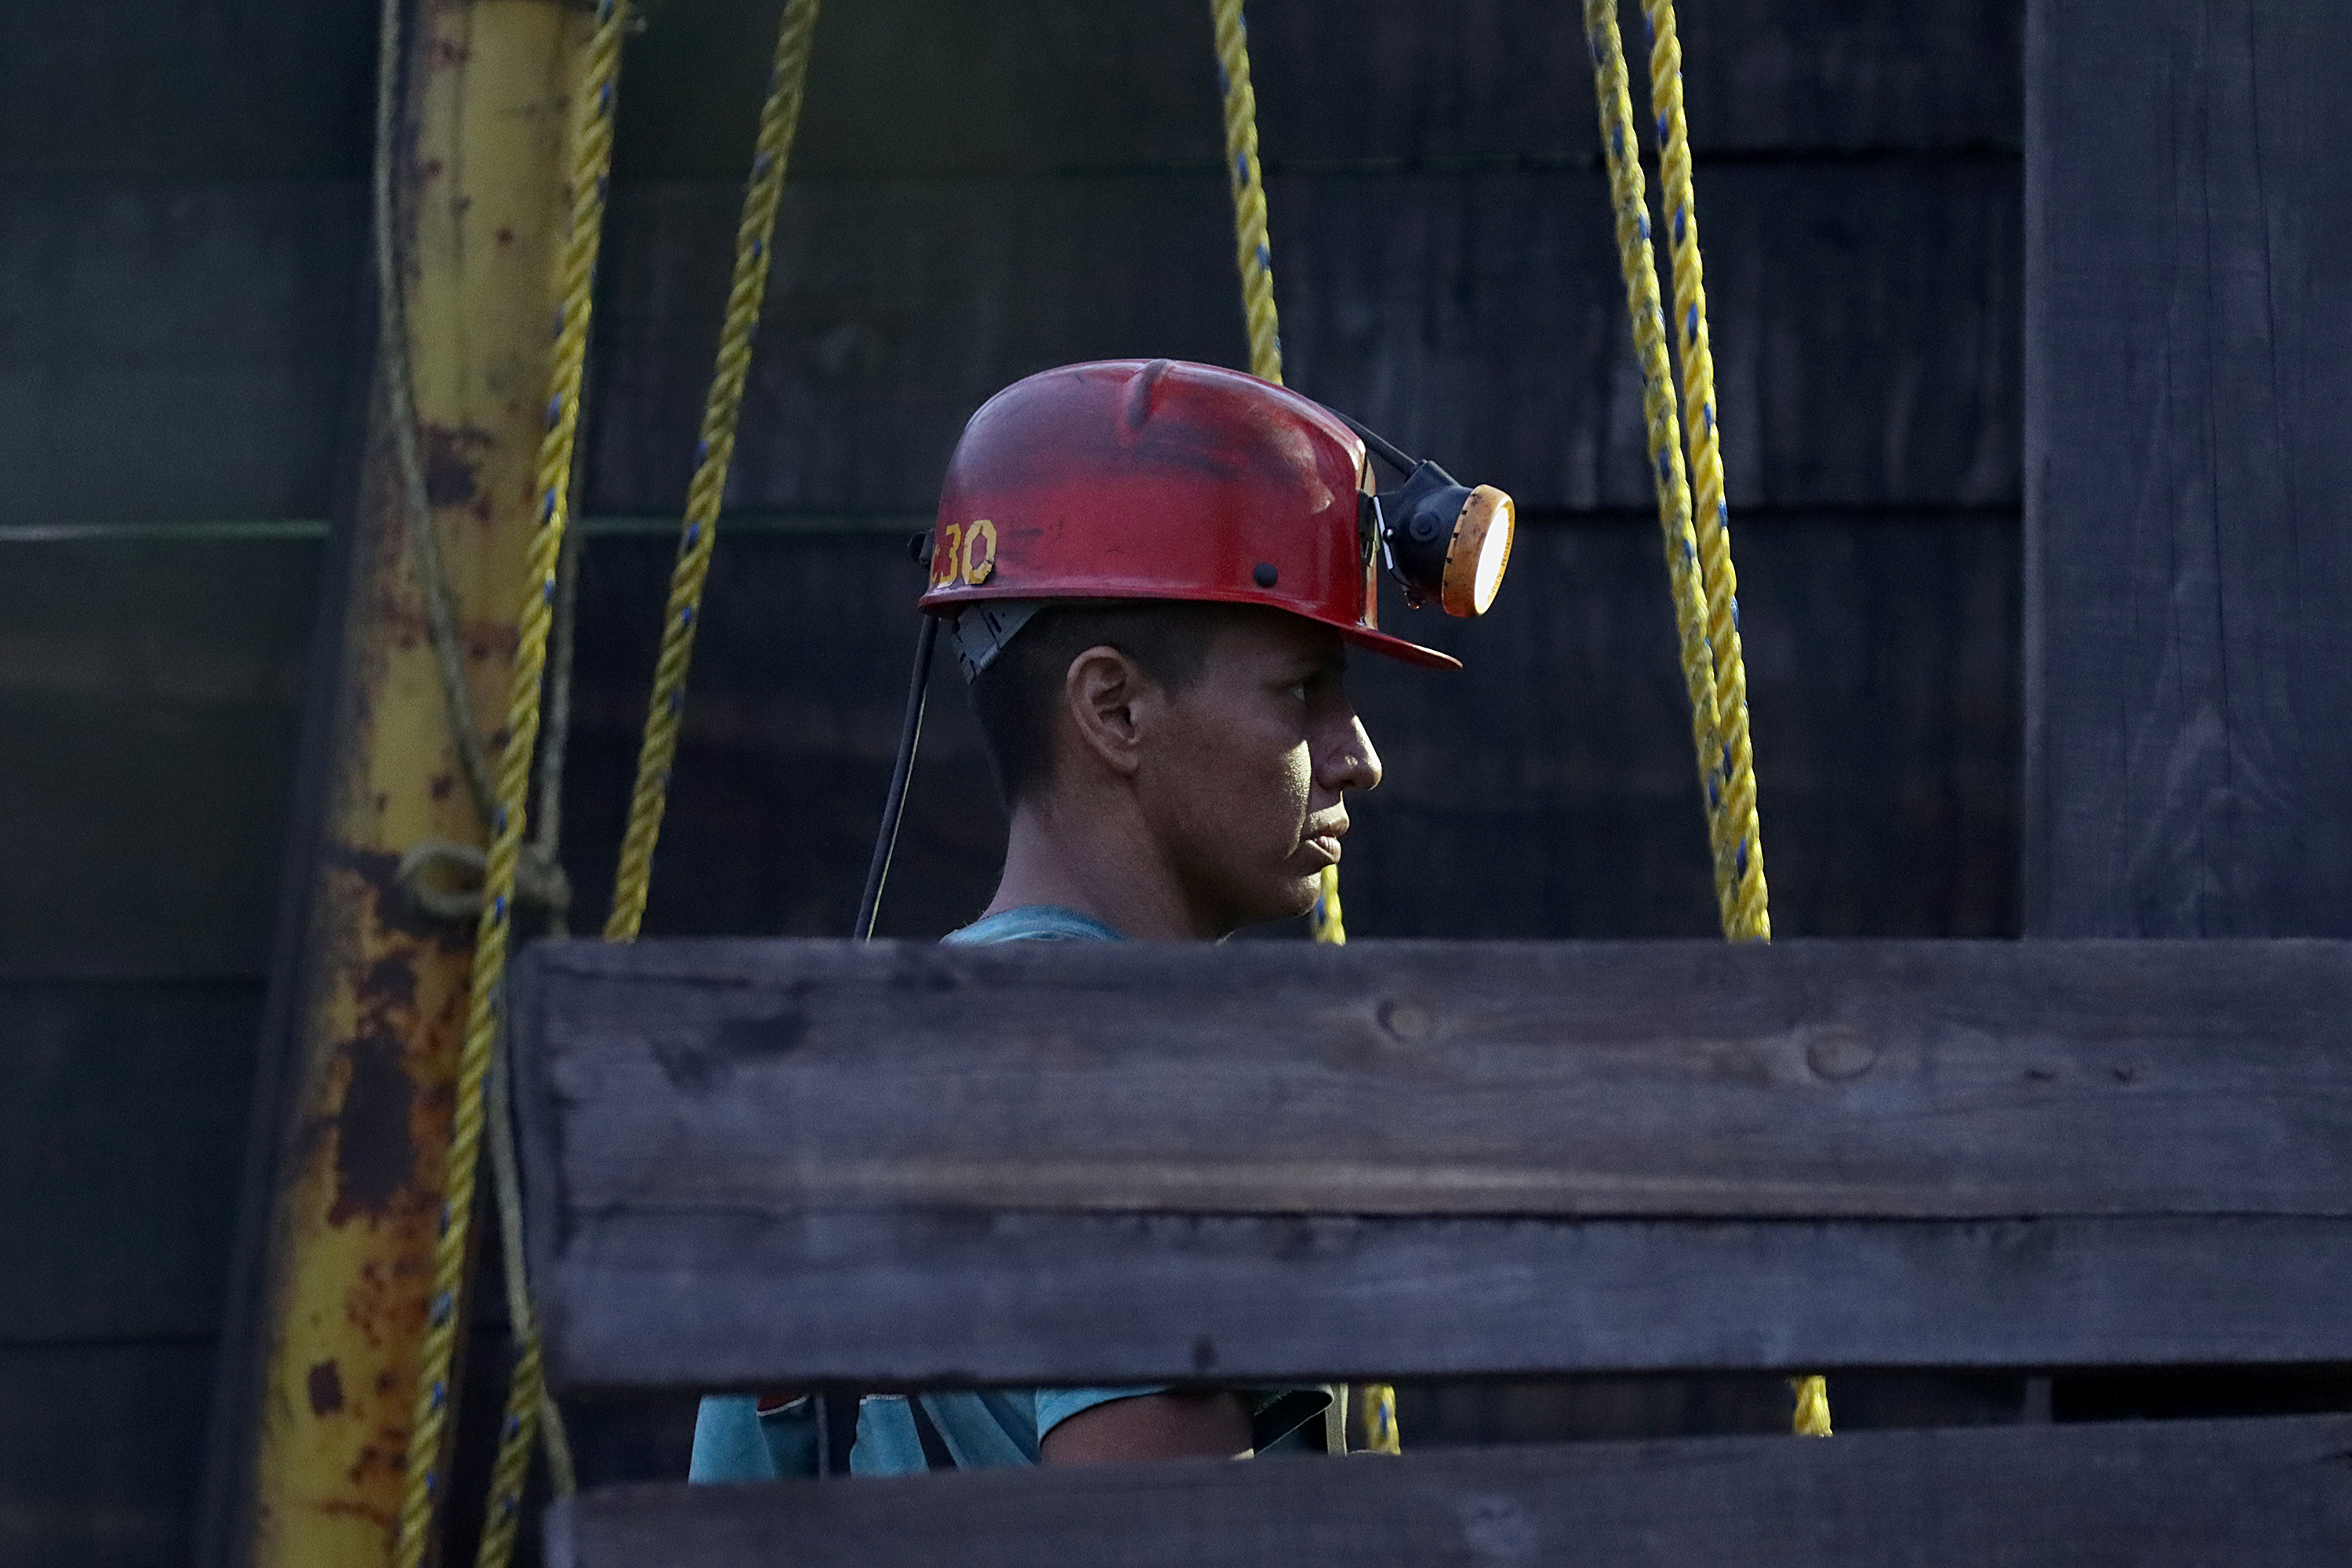 Mineros atrapados en México